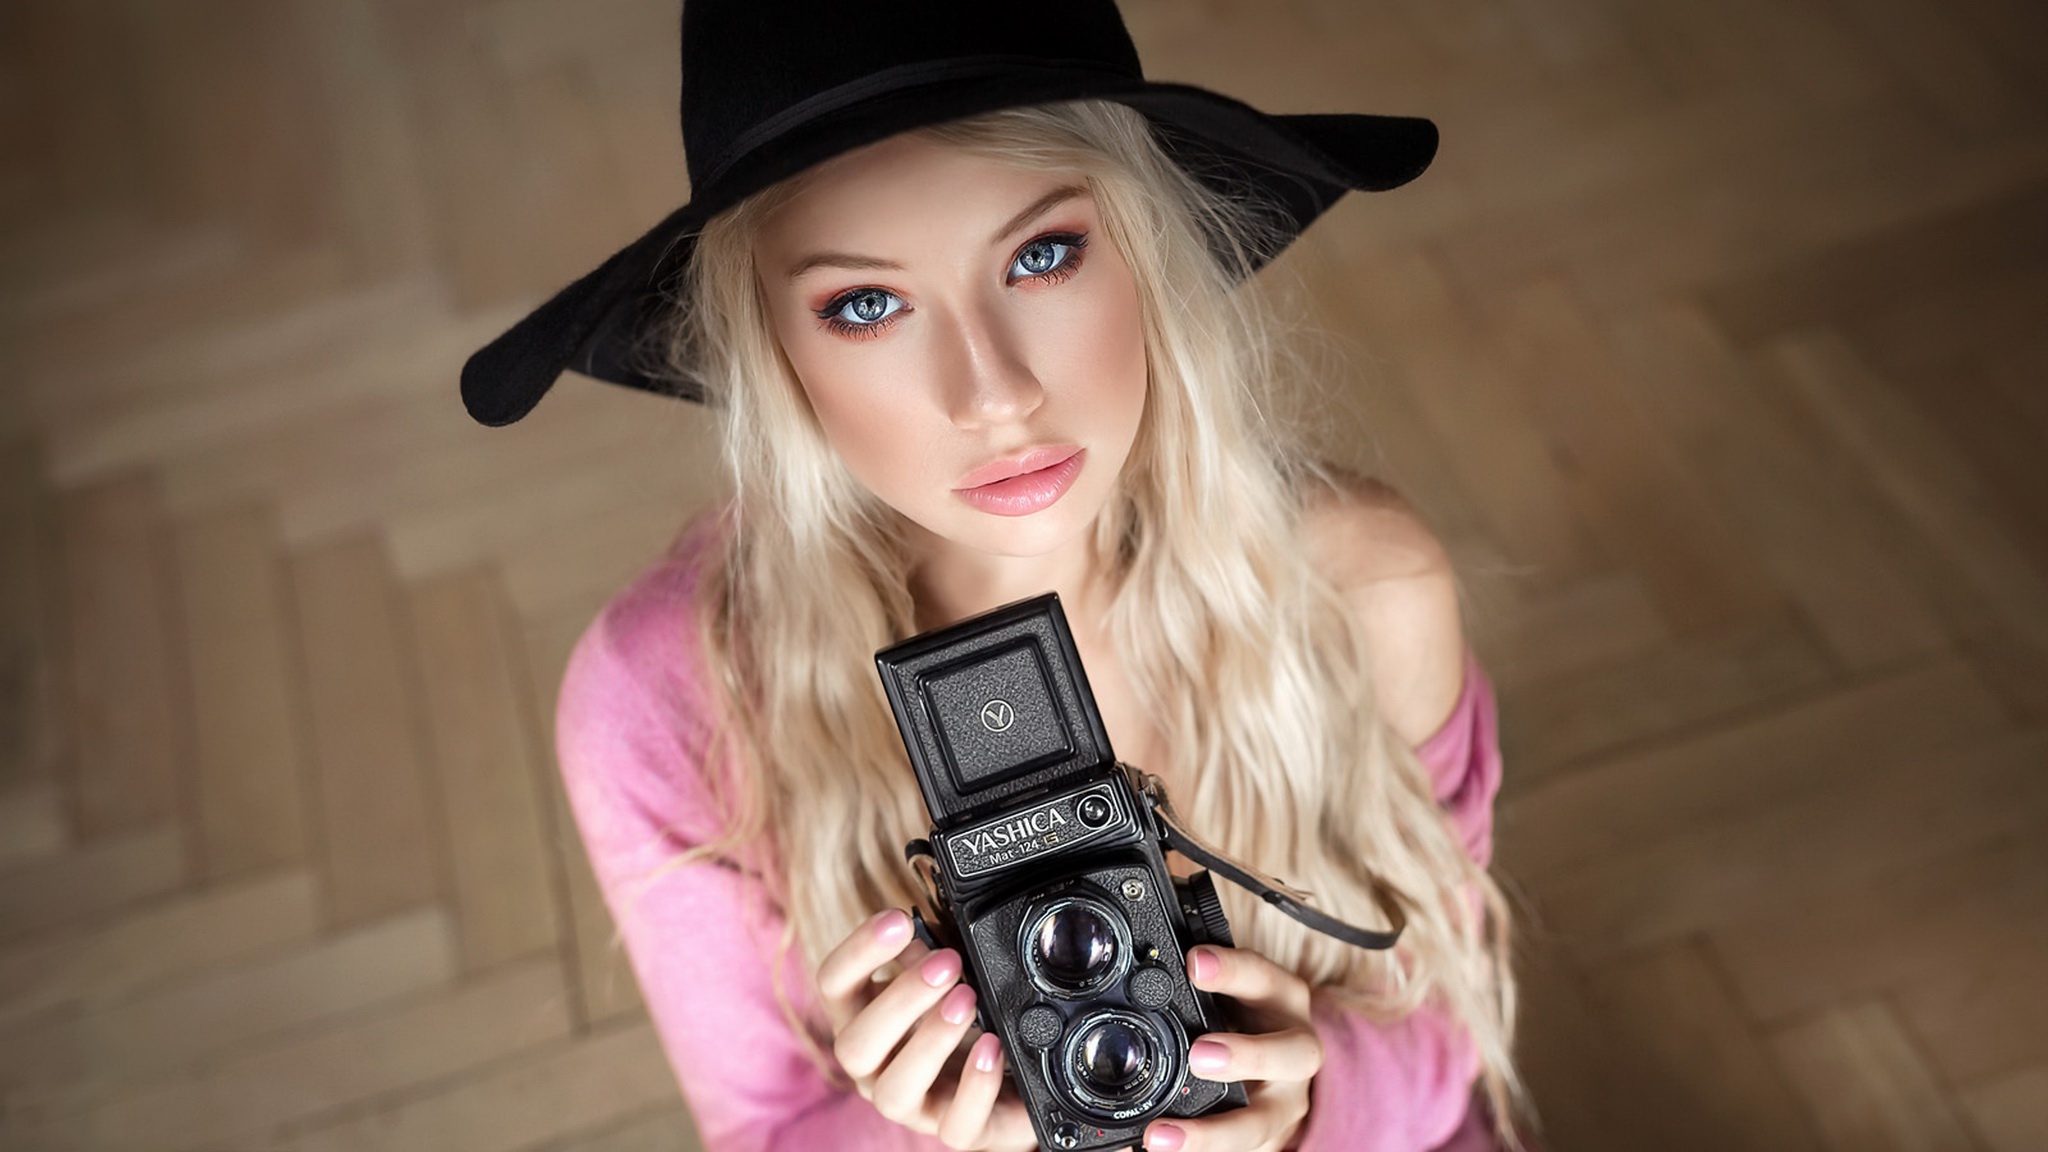 Download mobile wallpaper Camera, Blonde, Hat, Model, Women, Vintage Camera for free.